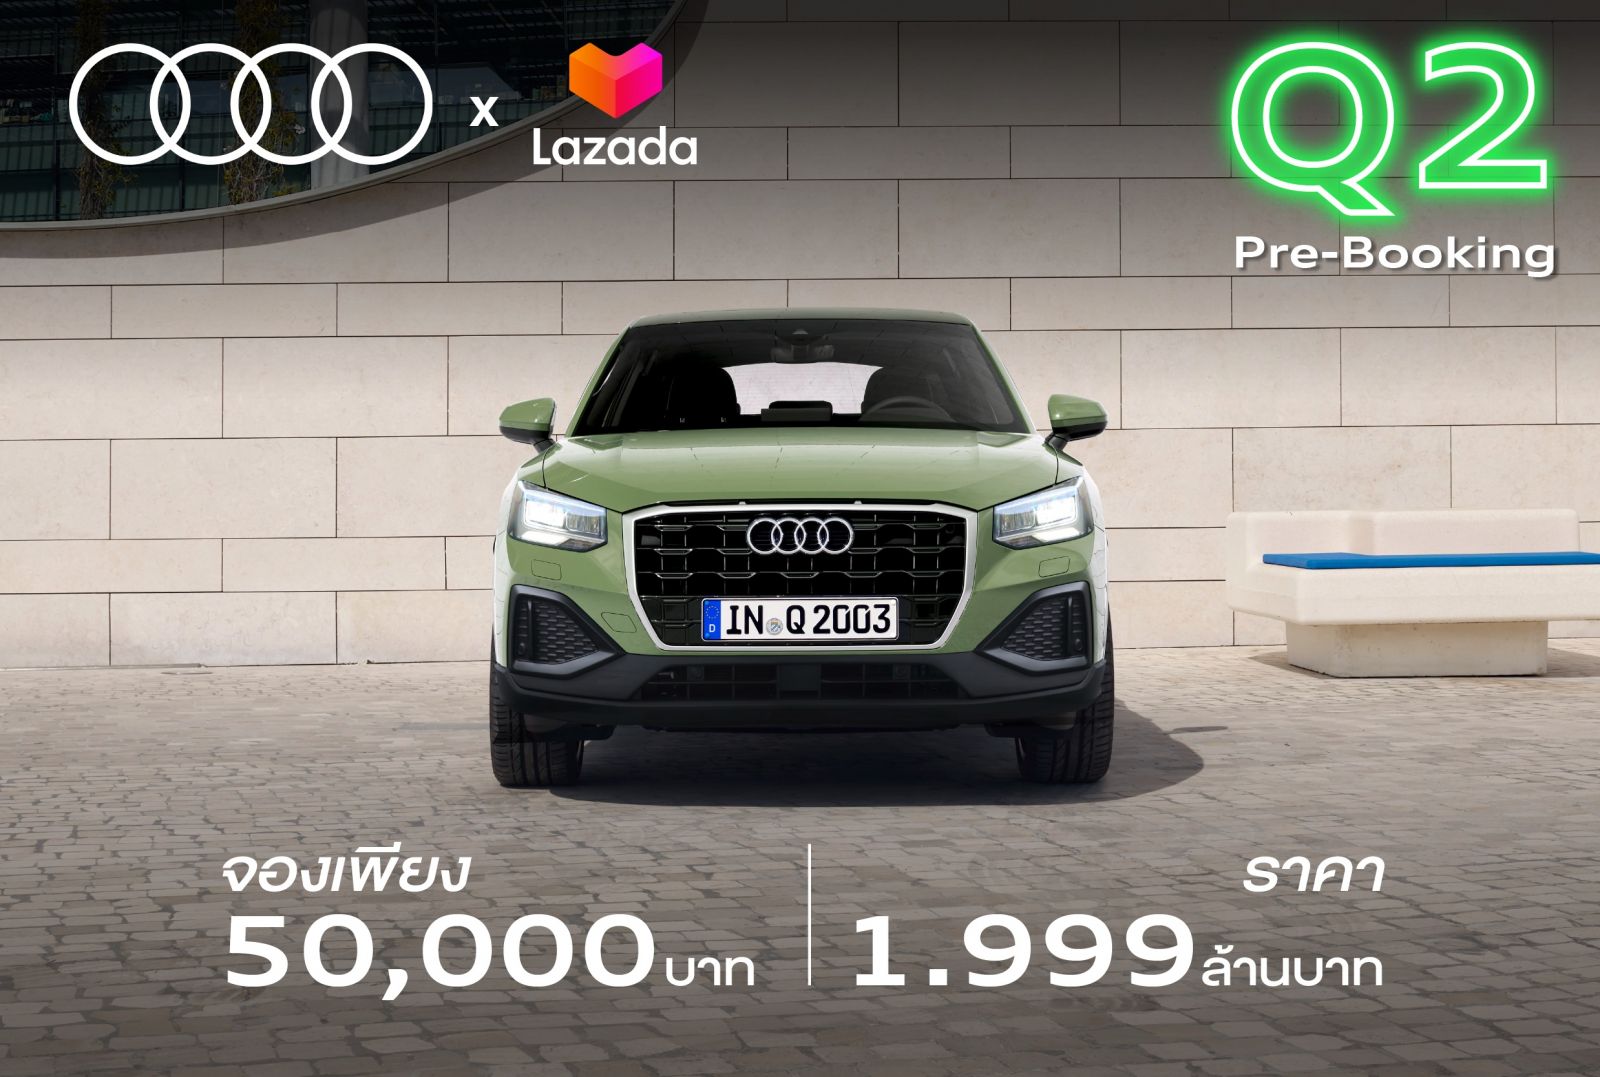 The New Audi Q2 